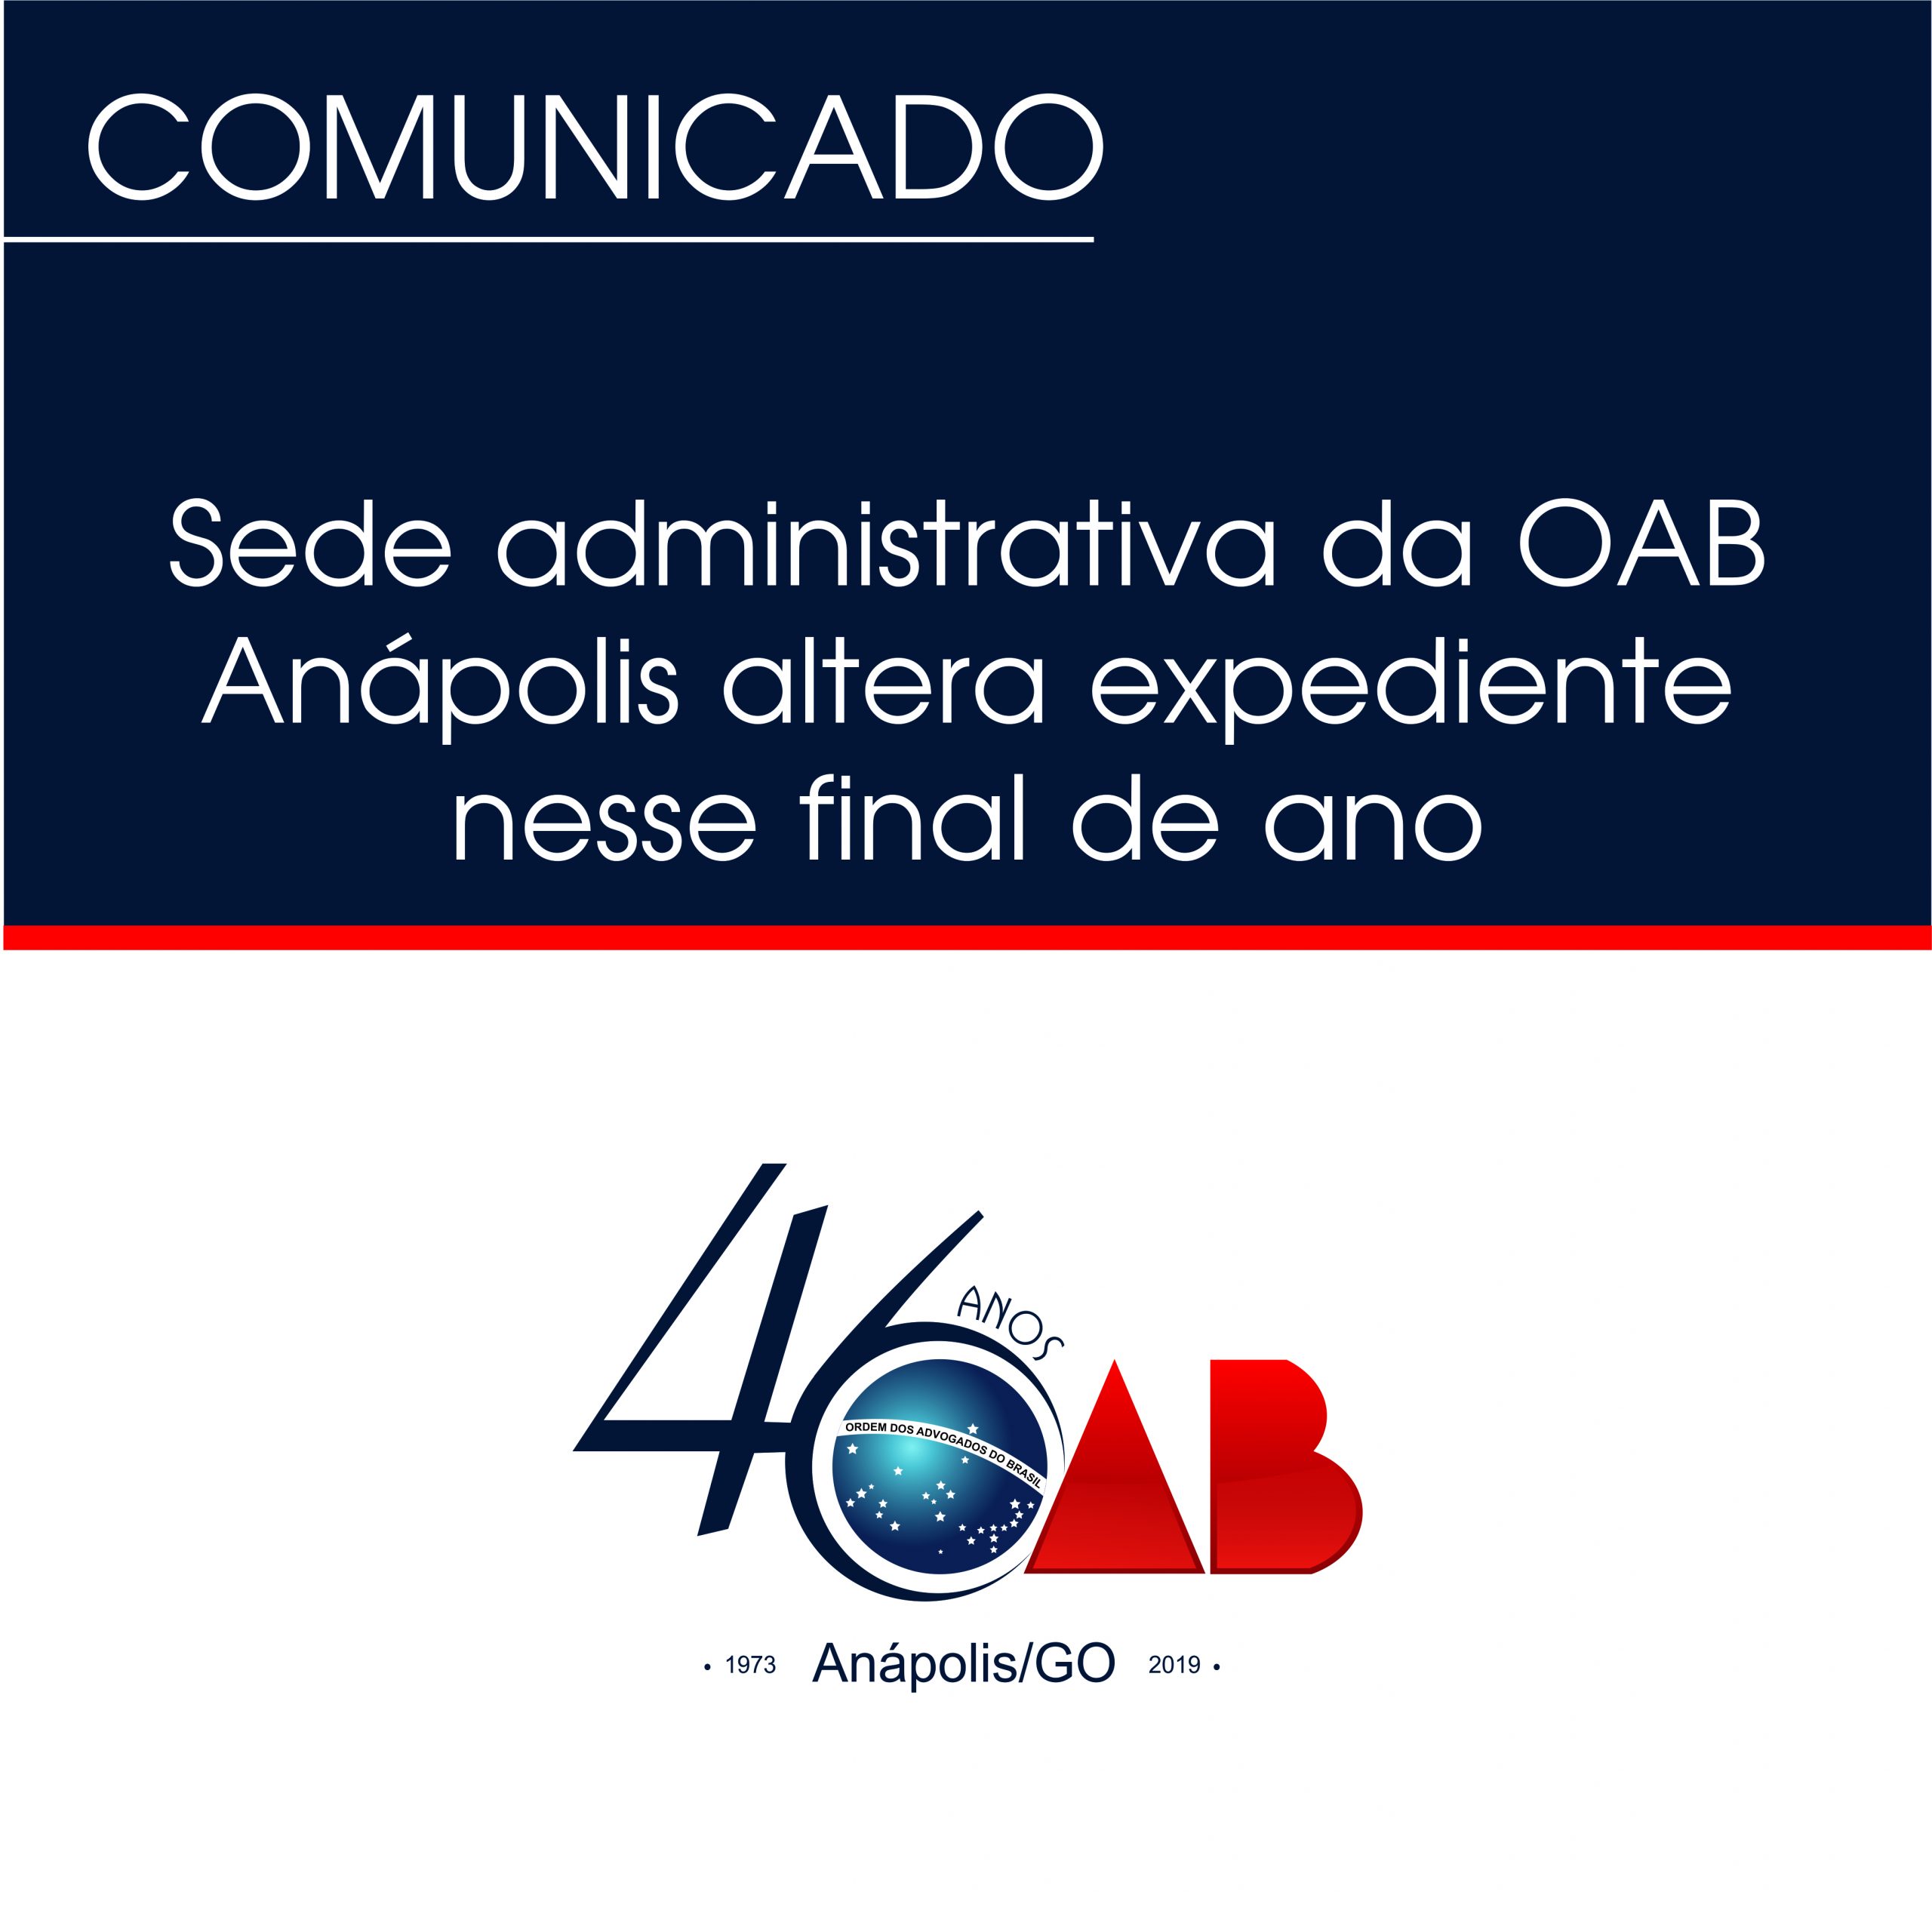 Sede administrativa da OAB Anápolis altera expediente nesse final de ano